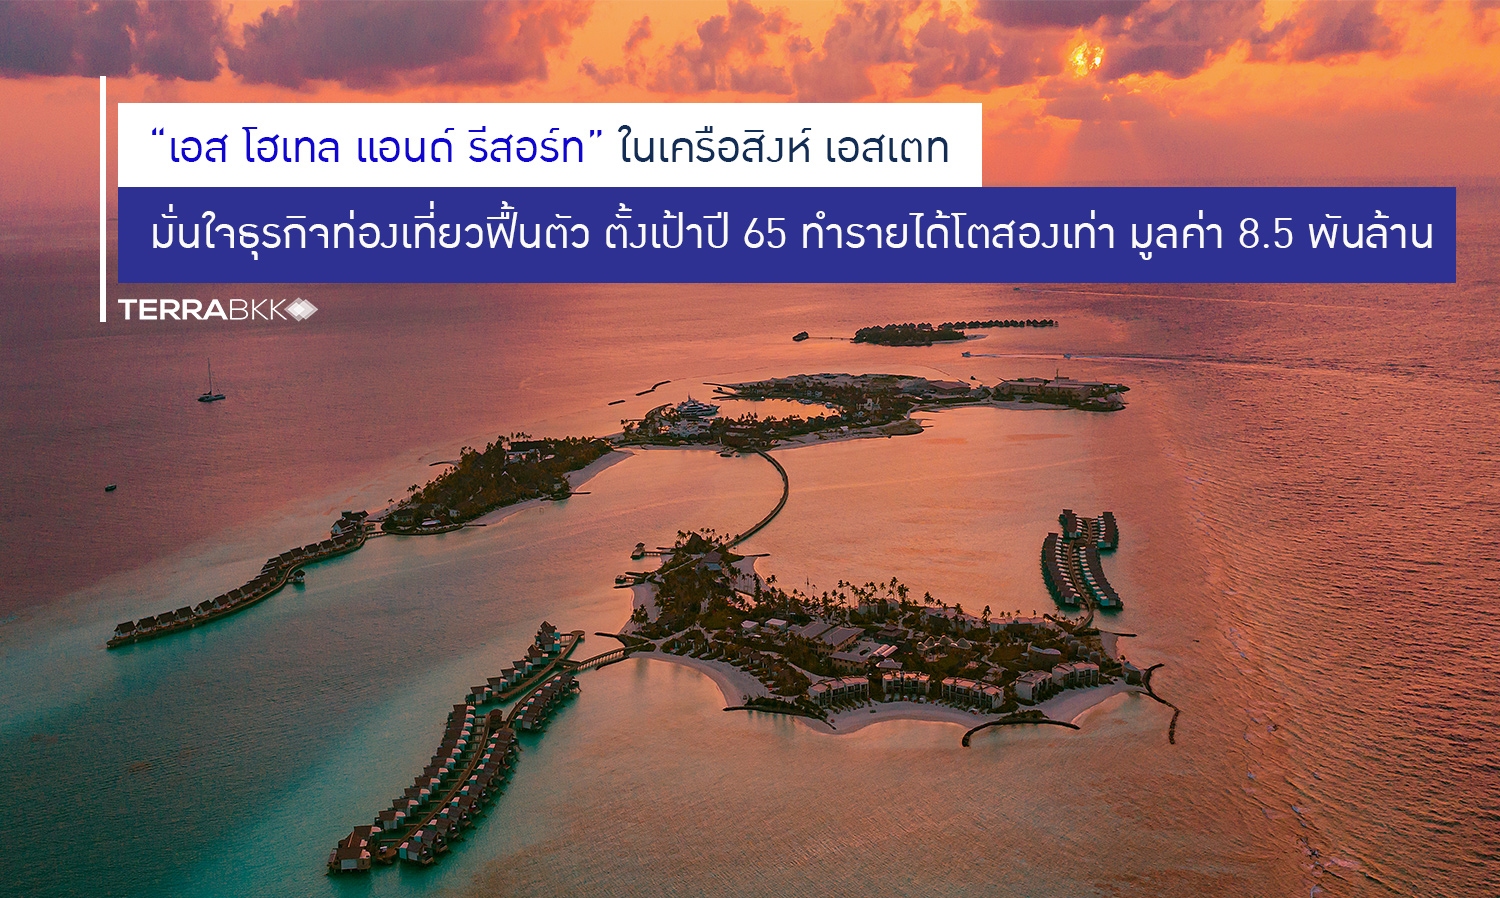 “เอส โฮเทล แอนด์ รีสอร์ท” ตั้งเป้าทำรายได้โตสองเท่า ขึ้นแท่นผู้ประกอบการโรงแรมทำรายได้สูงสุดเป็นอันดับ 2 ของไทย